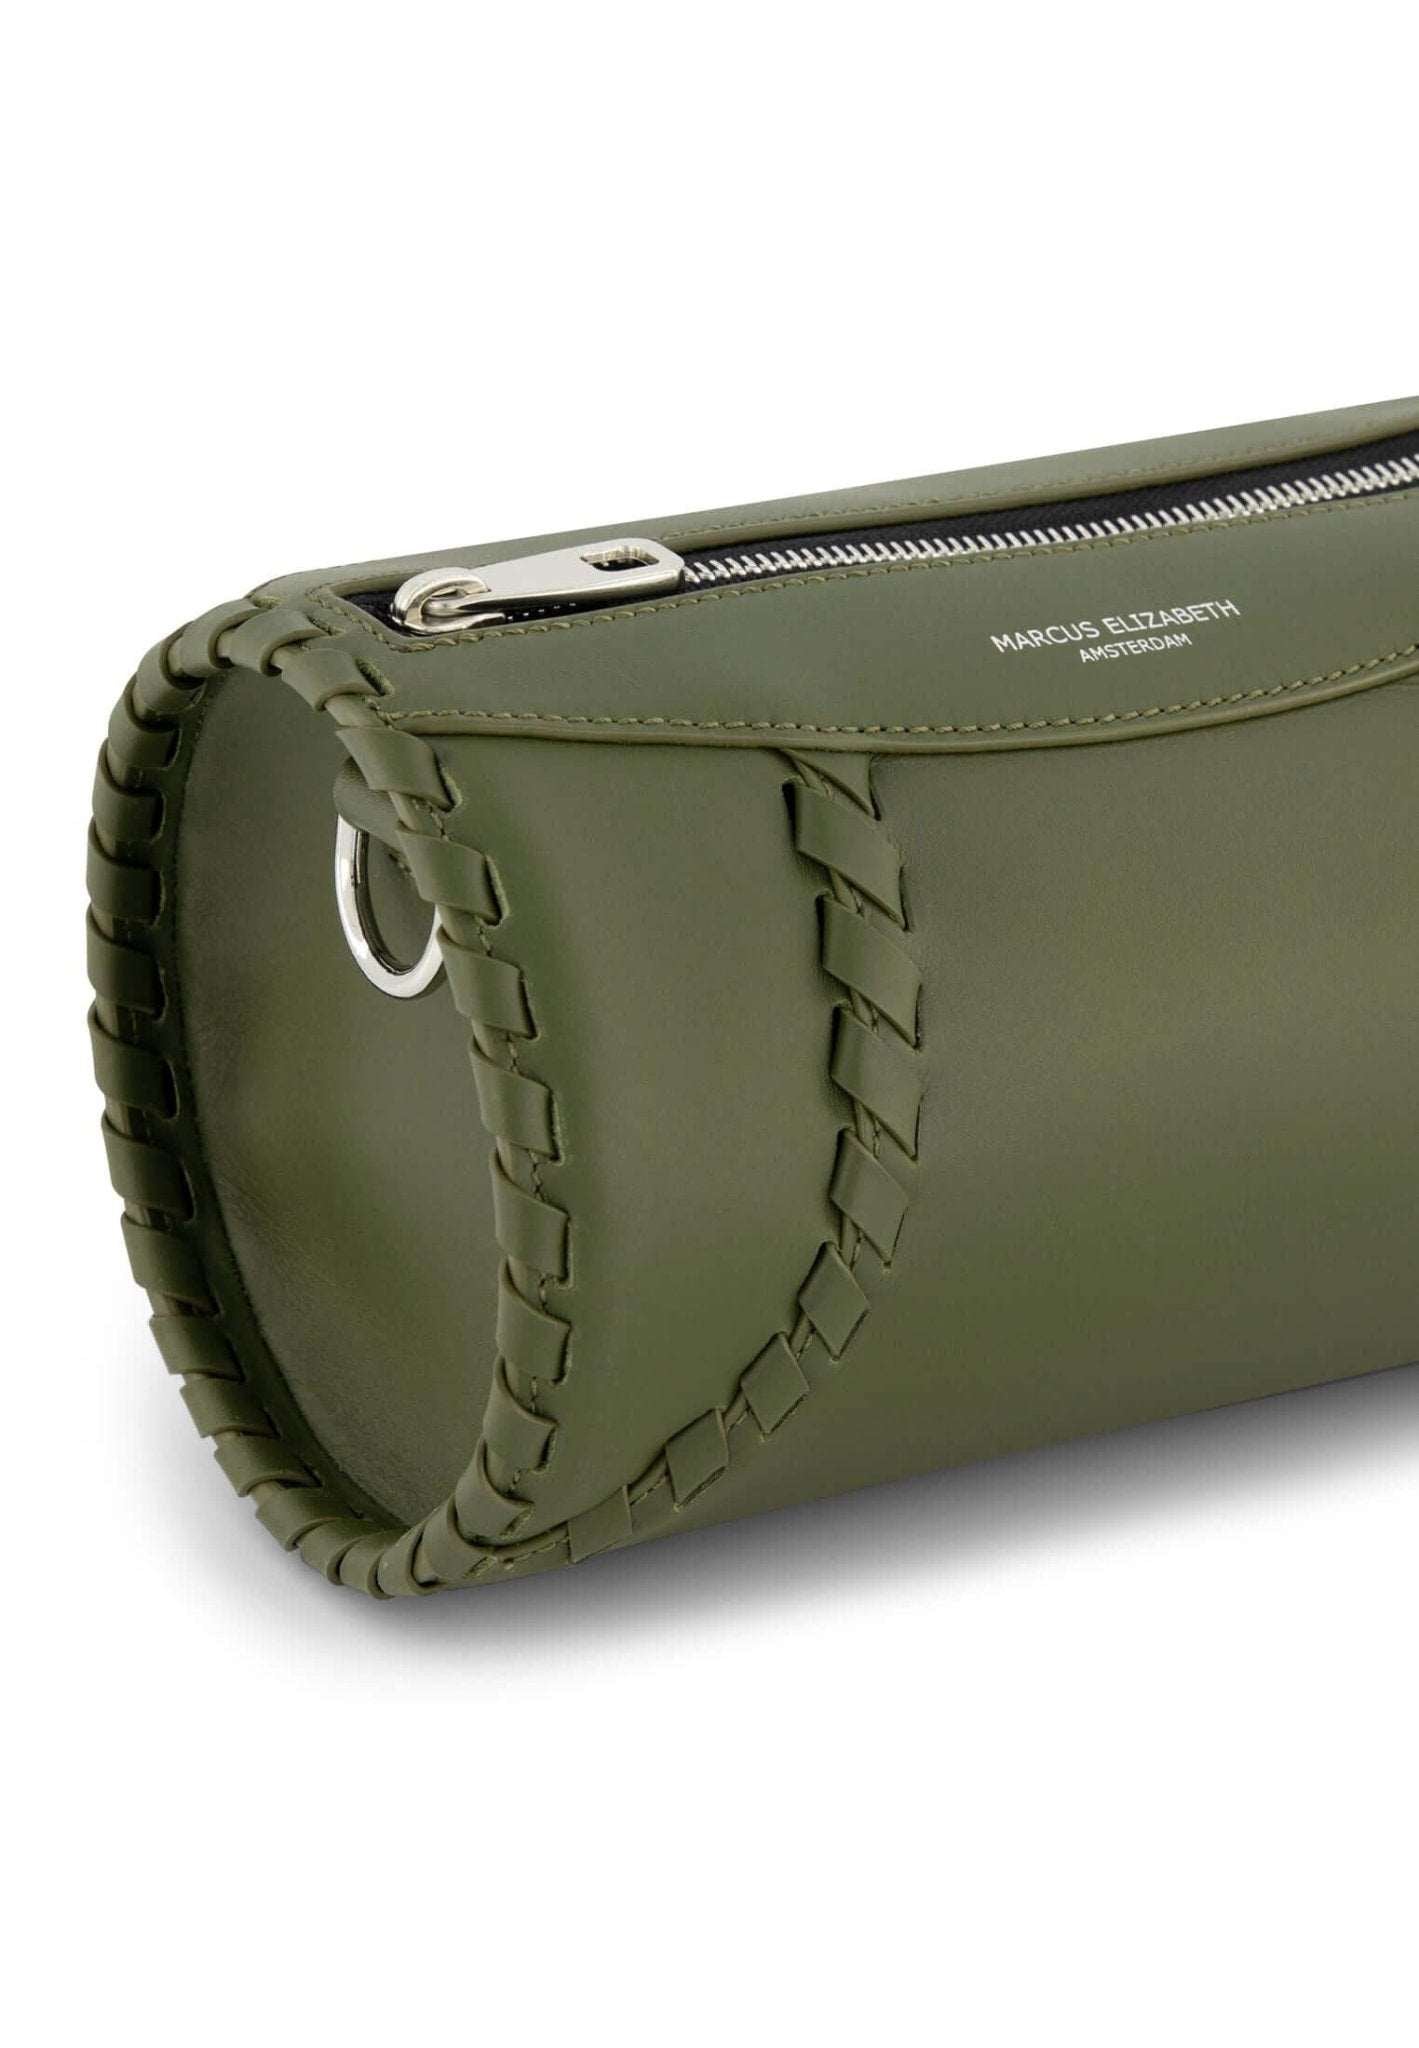 Tube Shoulder Bag Olive - MARCUS ELIZABETH - Handbags - MARCUS ELIZABETH - Tube Shoulder Bag Olive - MARCUS ELIZABETH - Handbags - MARCUS ELIZABETH - Tube Shoulder Bag Olive - MARCUS ELIZABETH